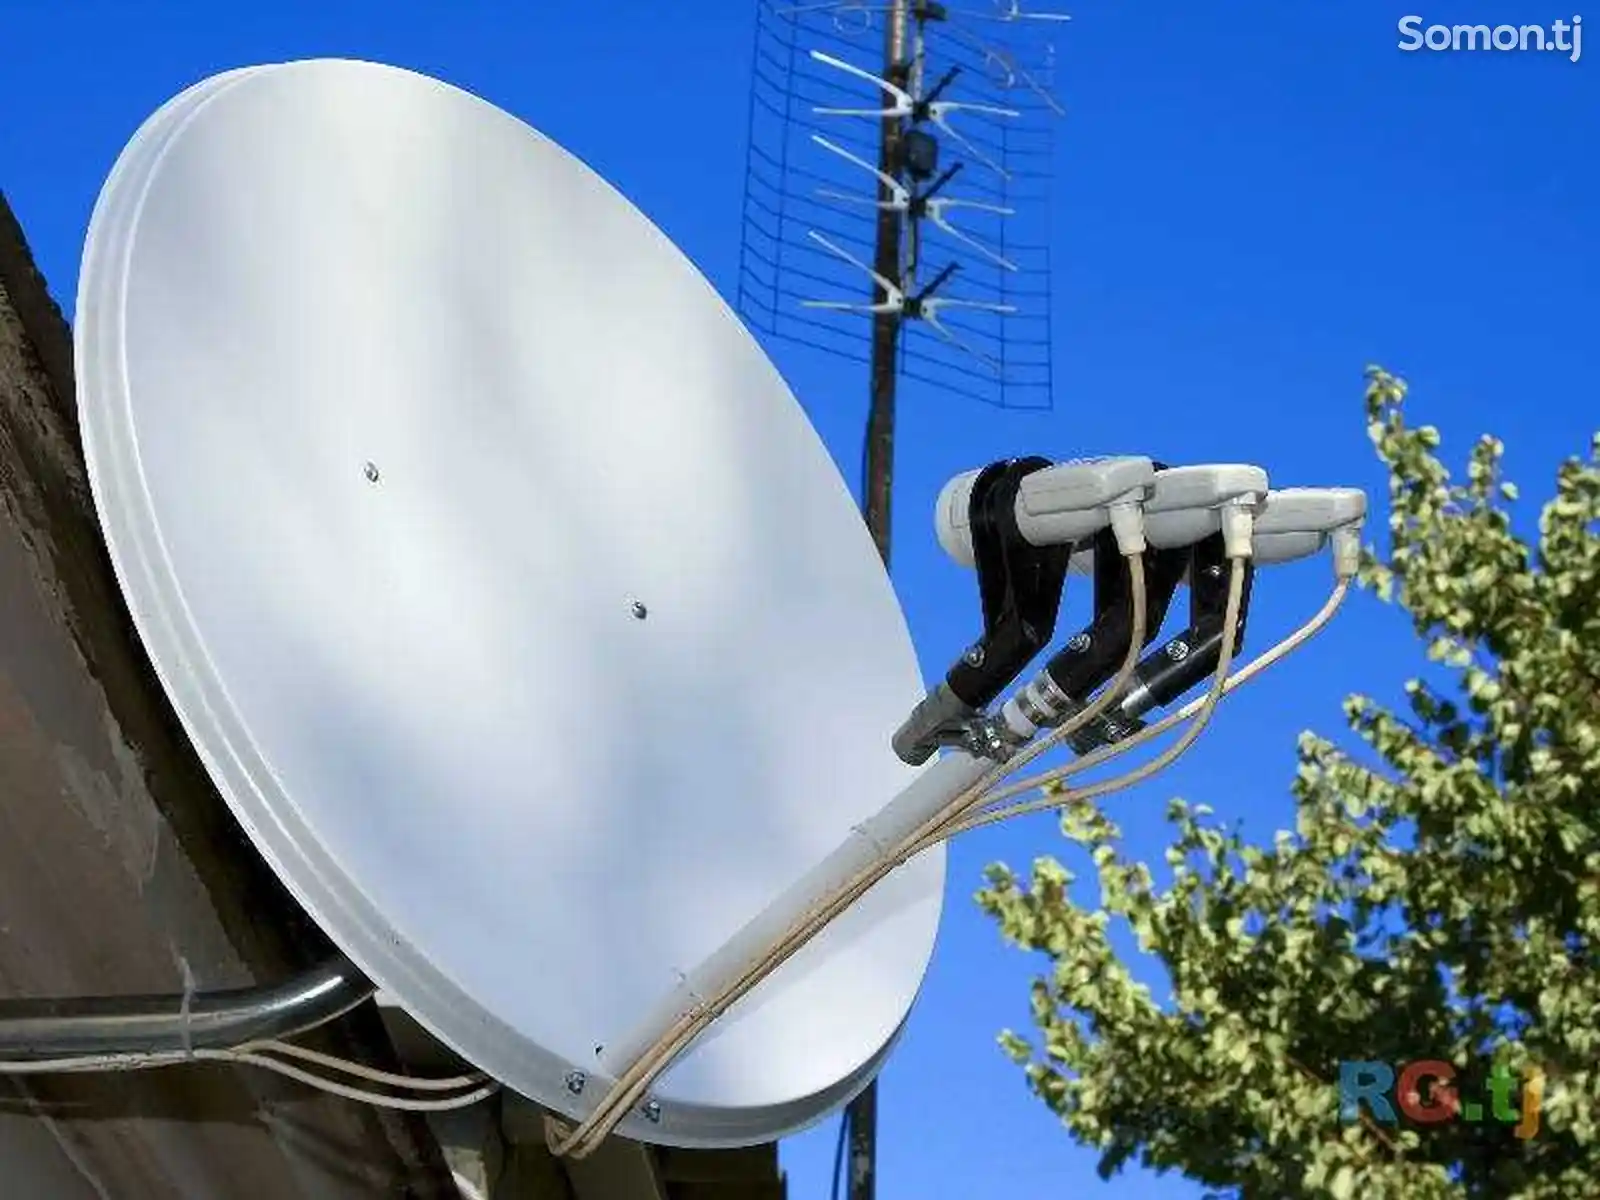 Установка и настройка спутниковых антенн